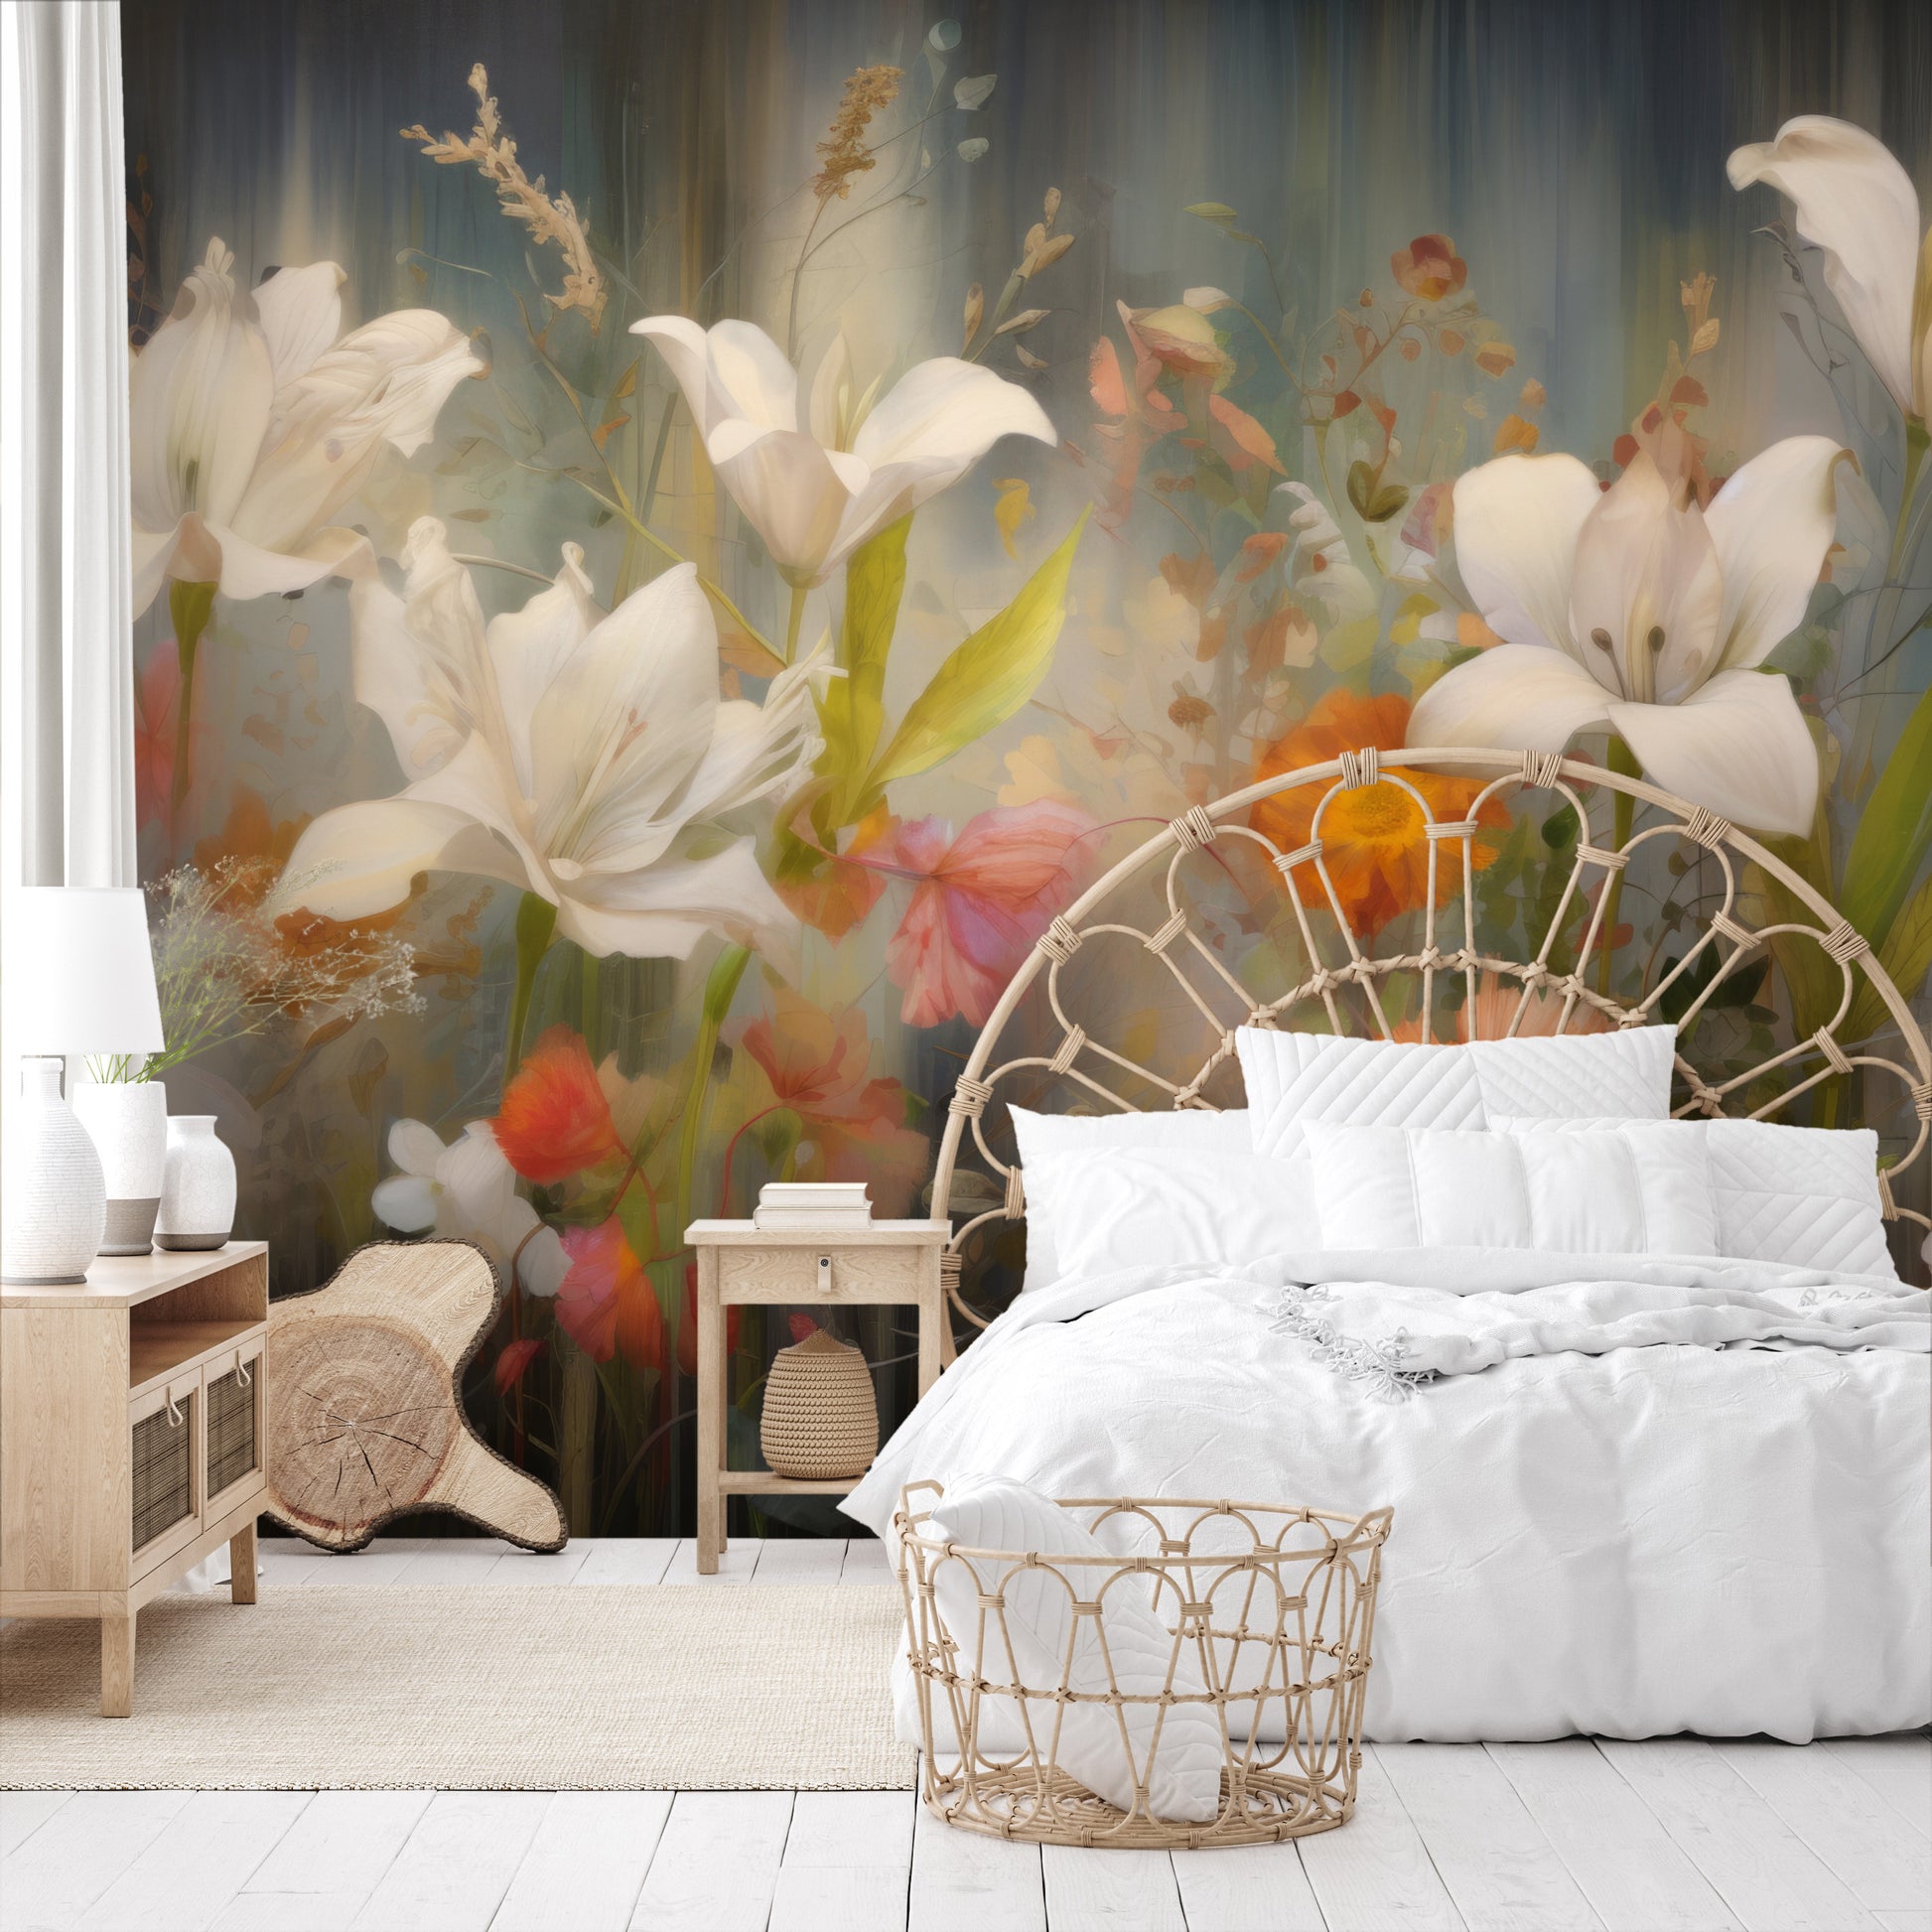 Fototapeta malowana o nazwie Vibrant Blossom Symphony pokazana w aranżacji wnętrza.